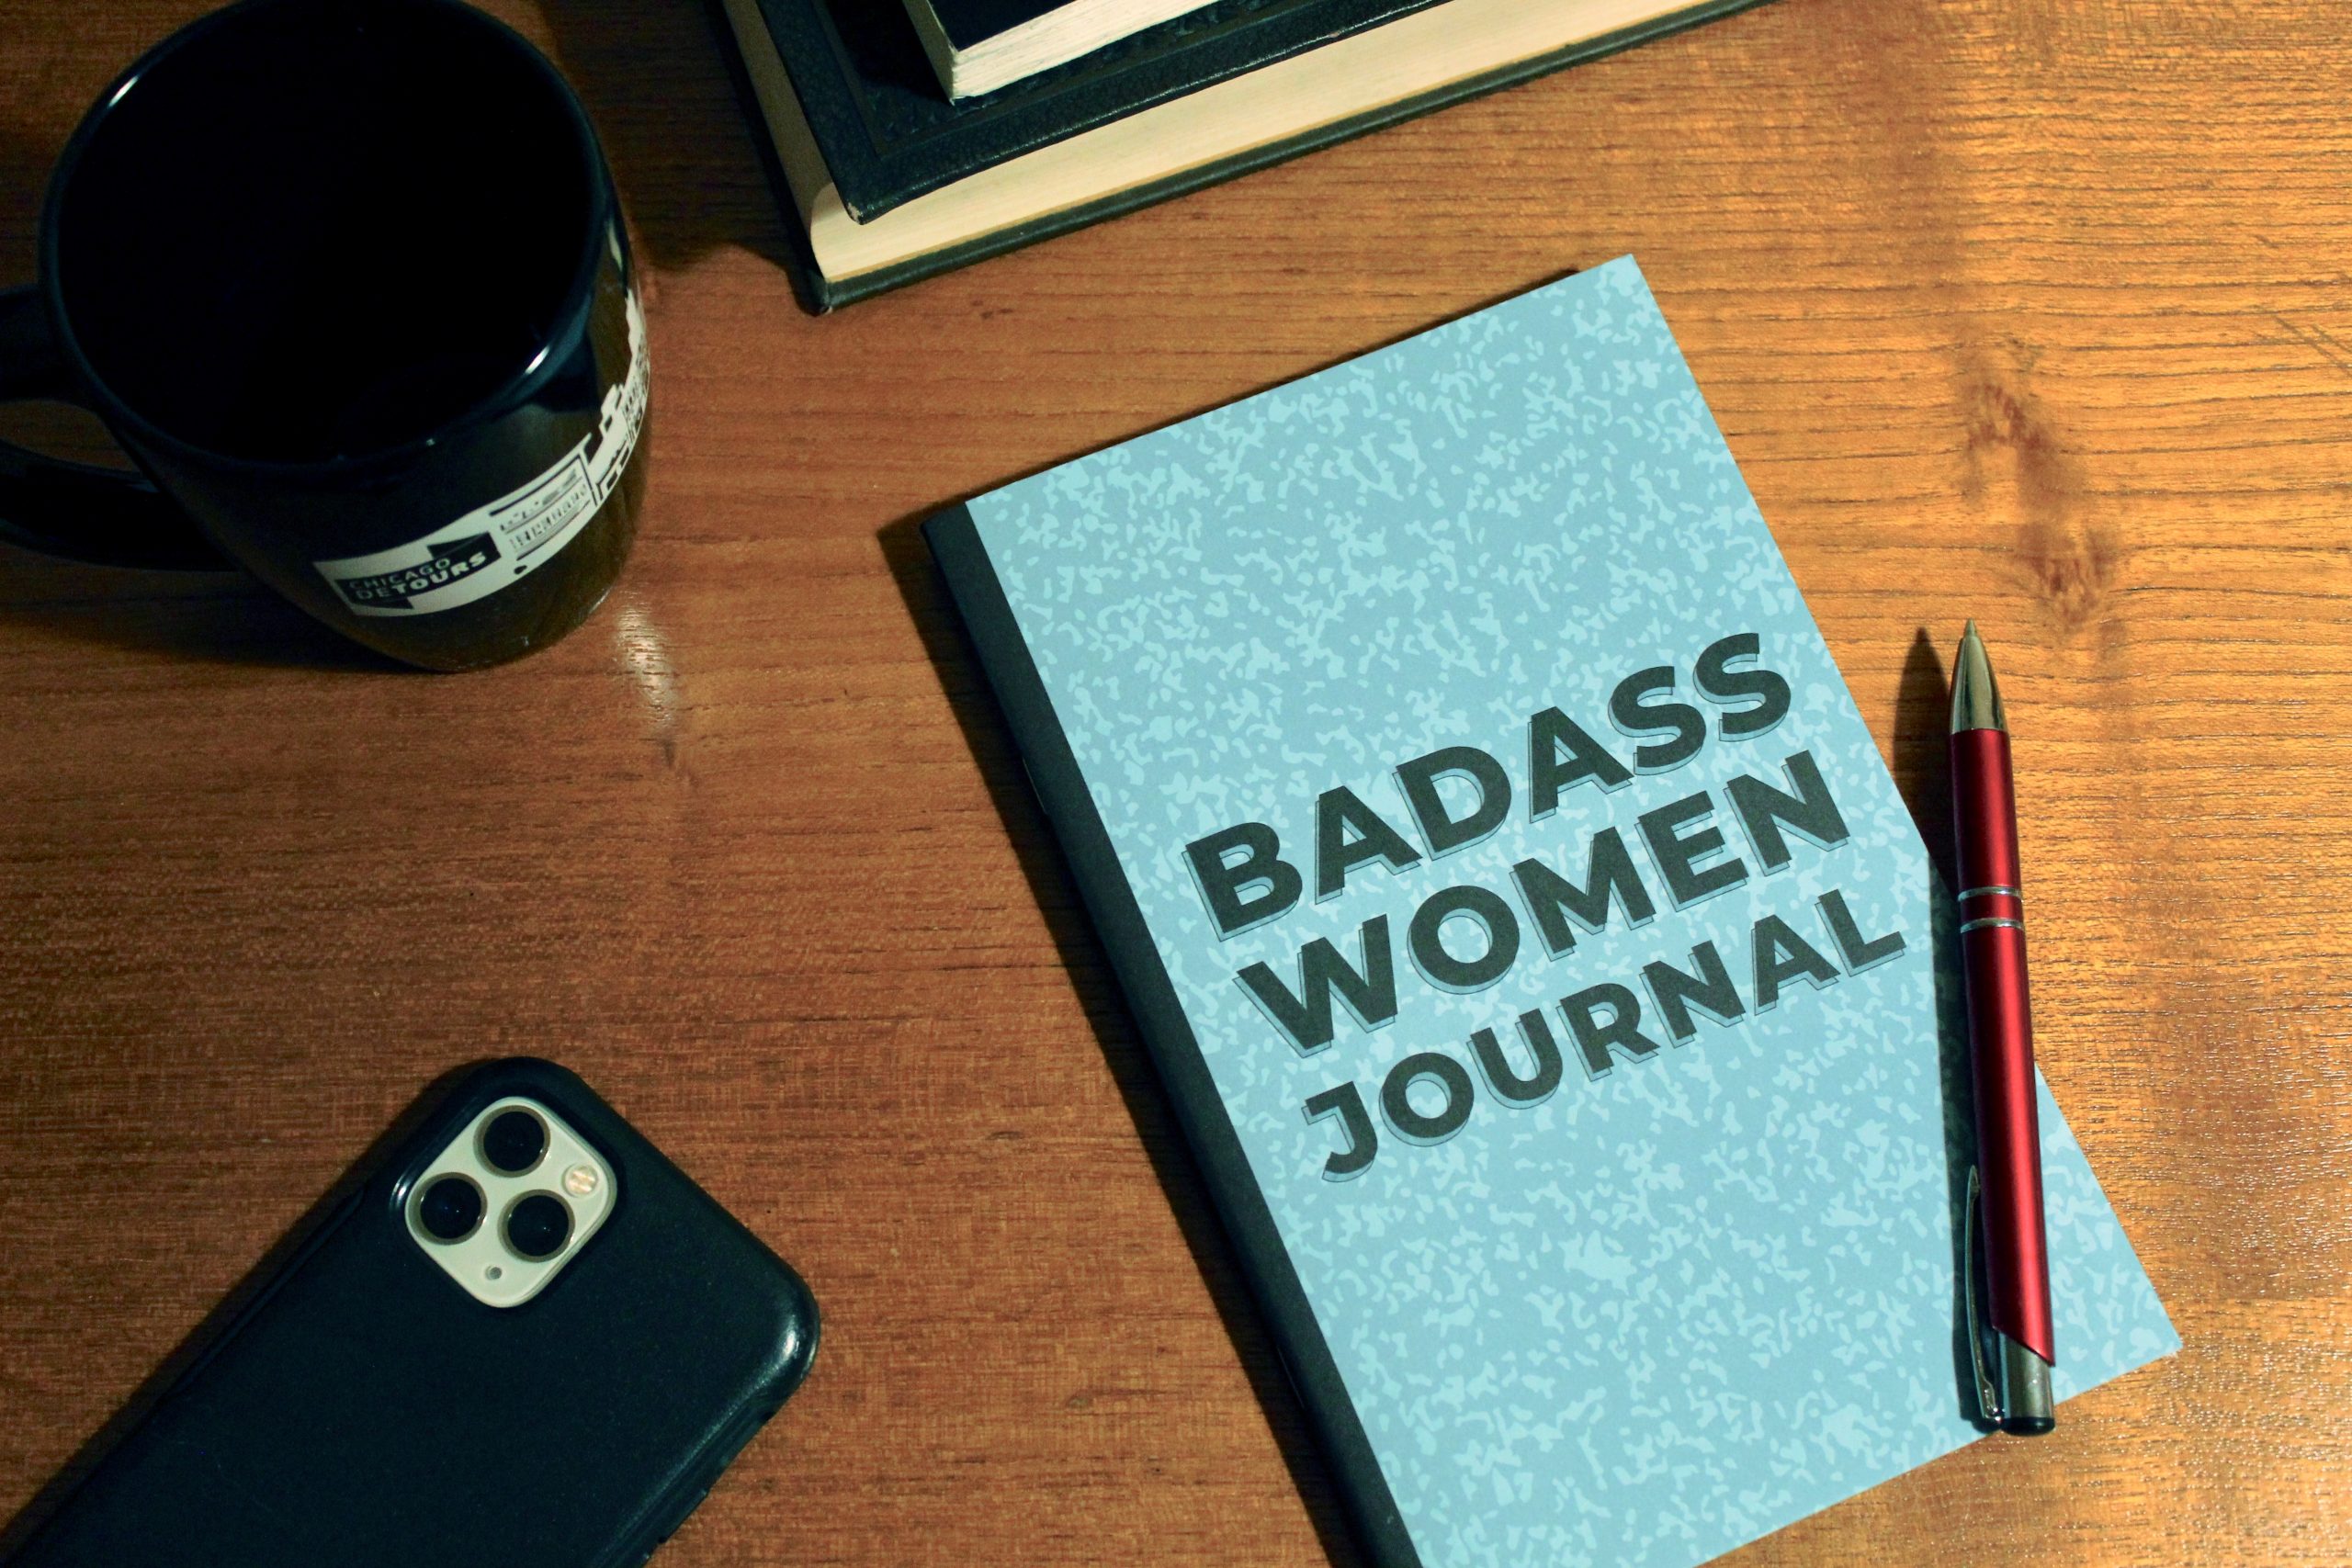 badass women journal 2020 shop local gift guide